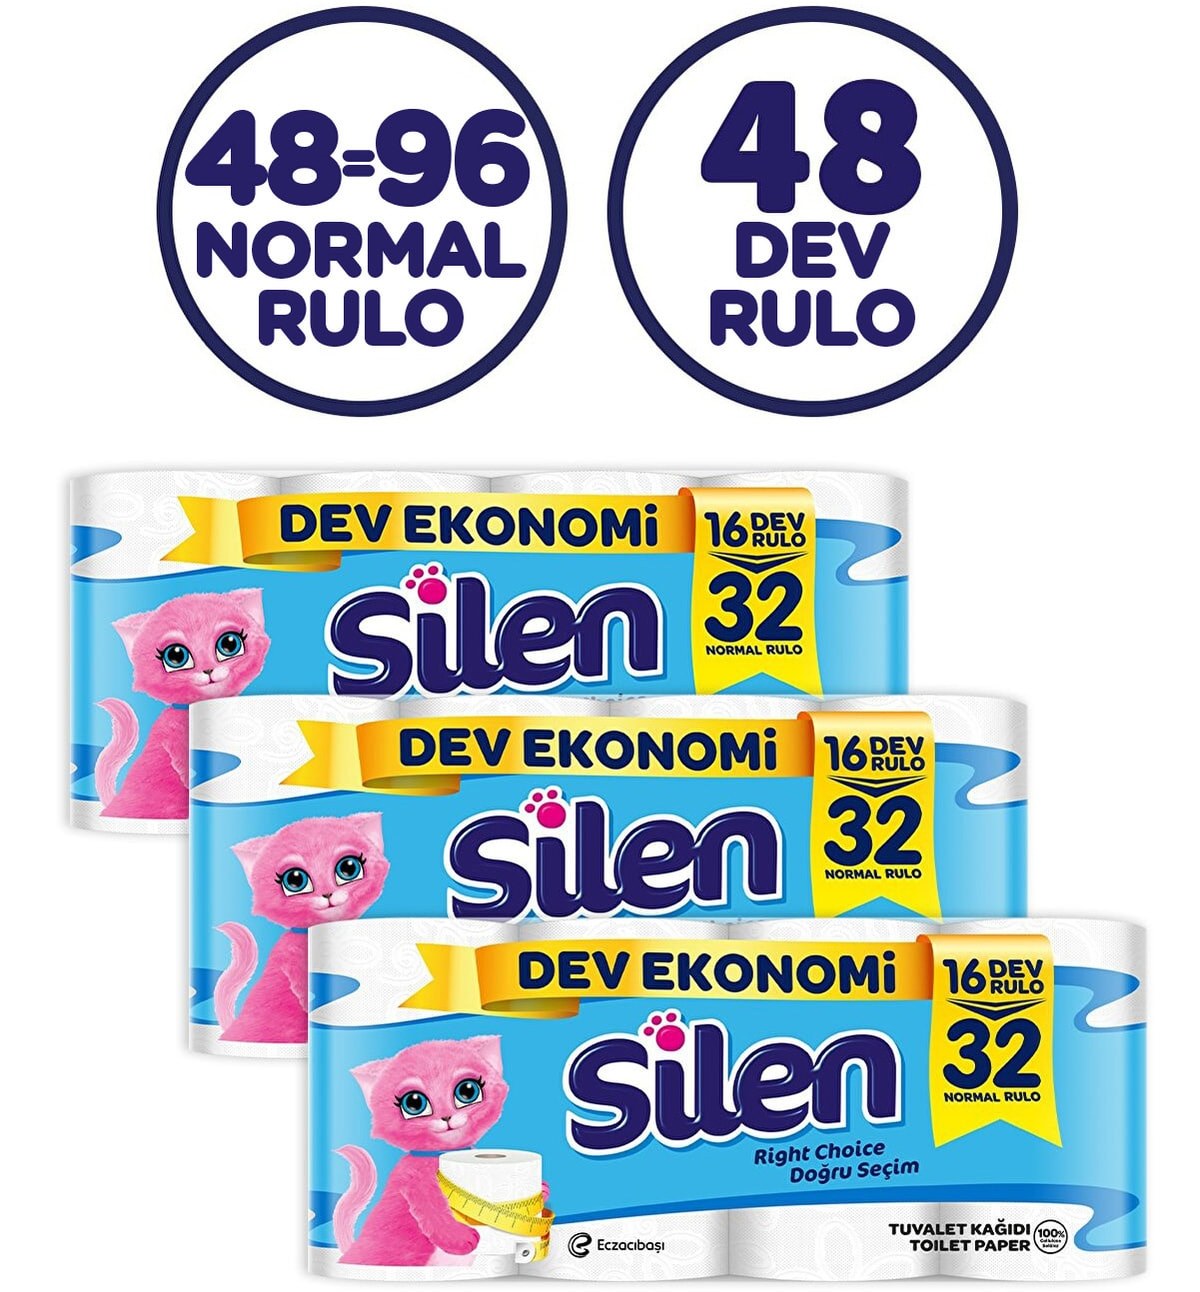 Tuvalet Kağıdı 48'li Dev Rulo (16=32,96 RULO) Fiyatı ve Özelliklerı - Findik